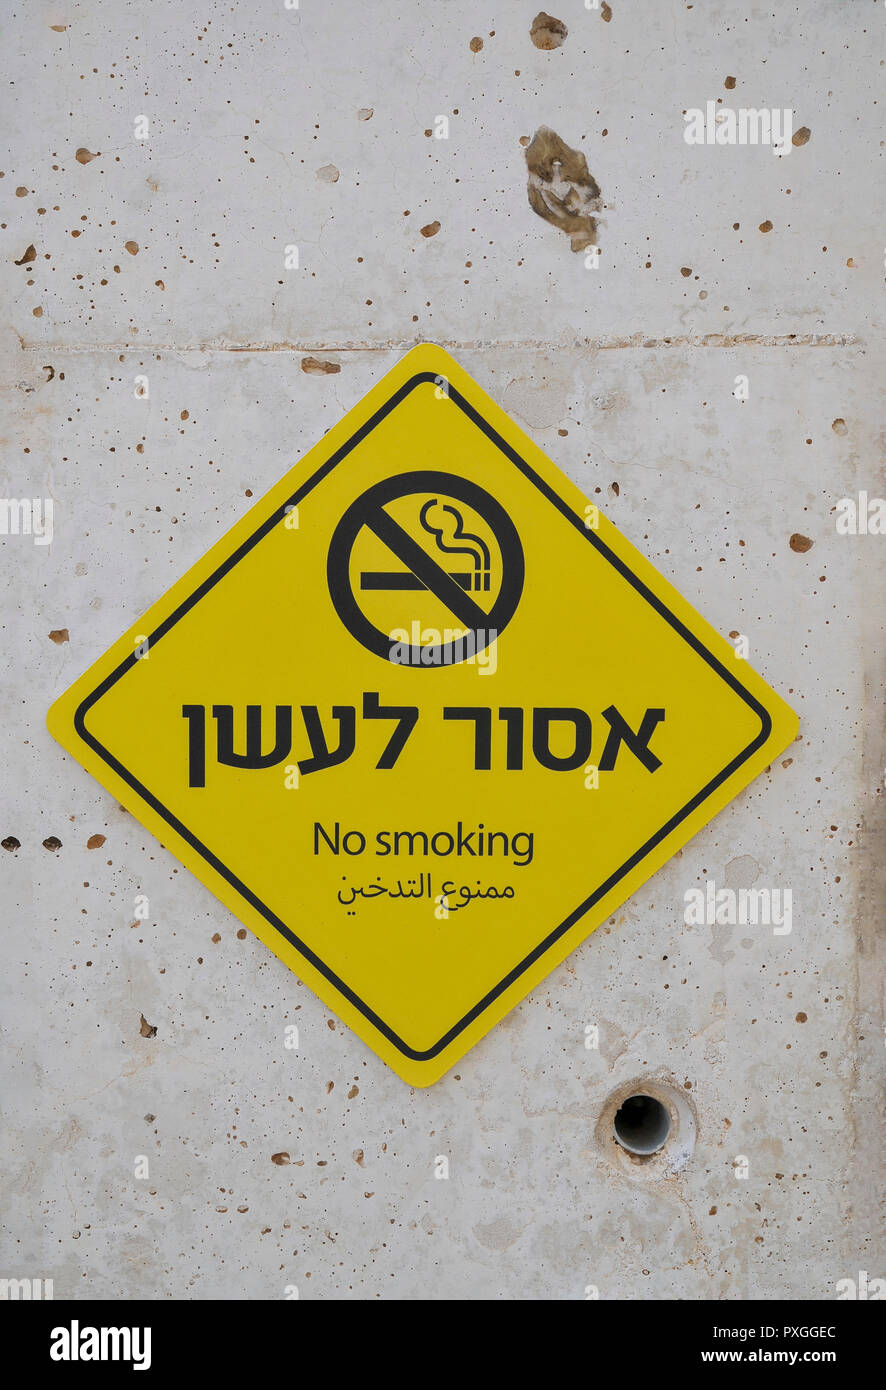 Gelb, NO SMOKING sign in Hebräisch und Arabisch auf eine Betonwand Stockfoto